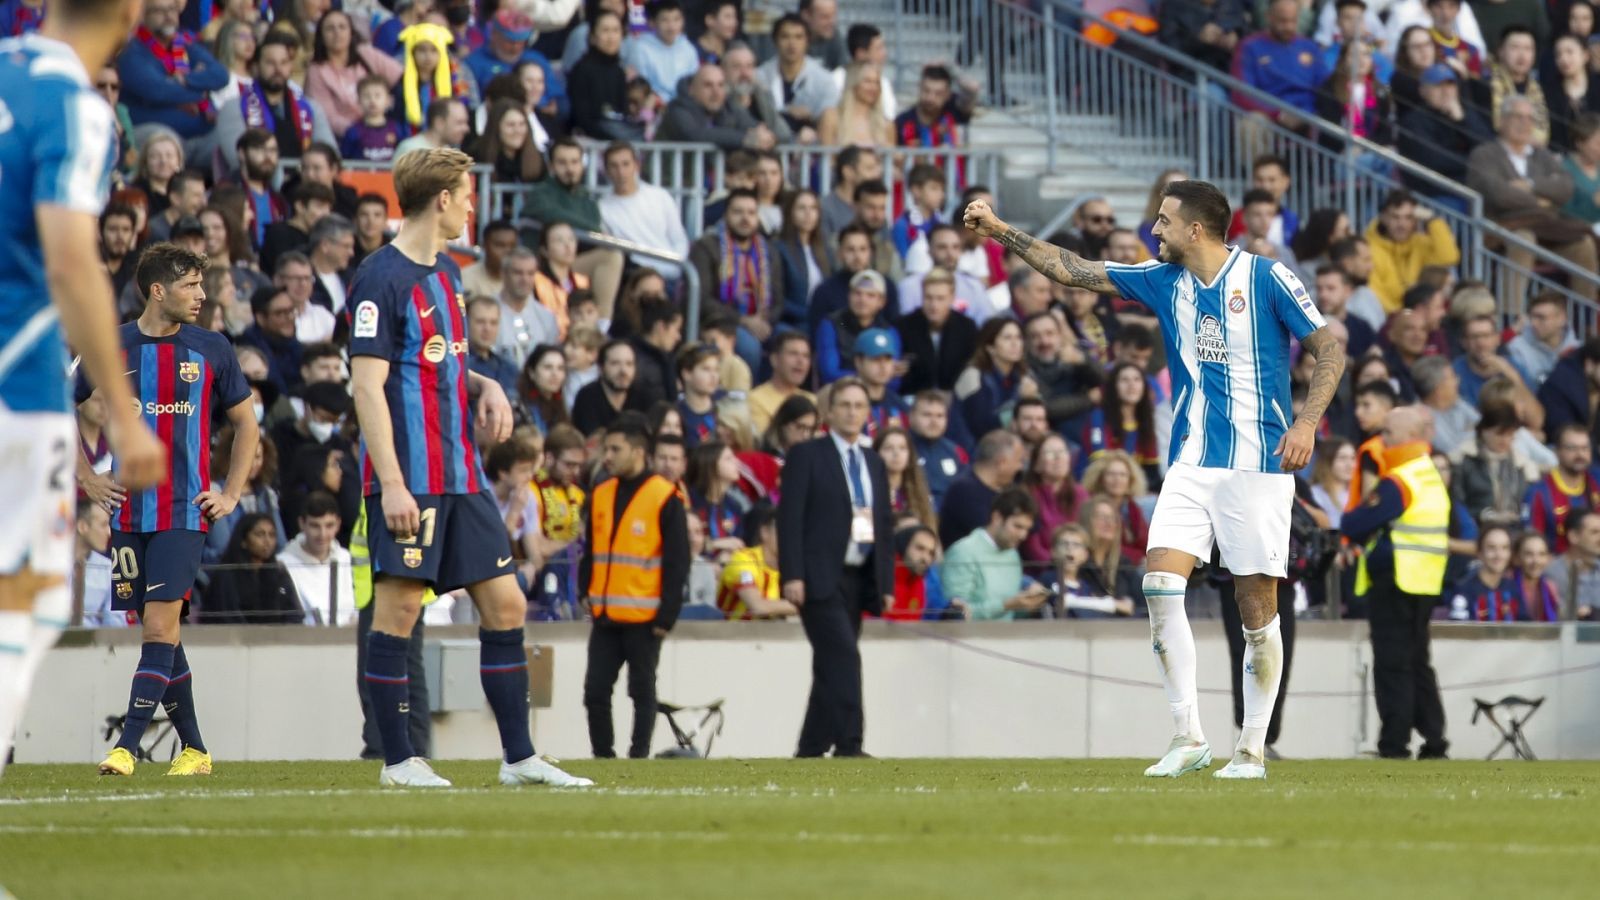 Buena voluntad caricia Transeúnte Barcelona - Espanyol: resumen, goles y resultado | La Liga en vivo